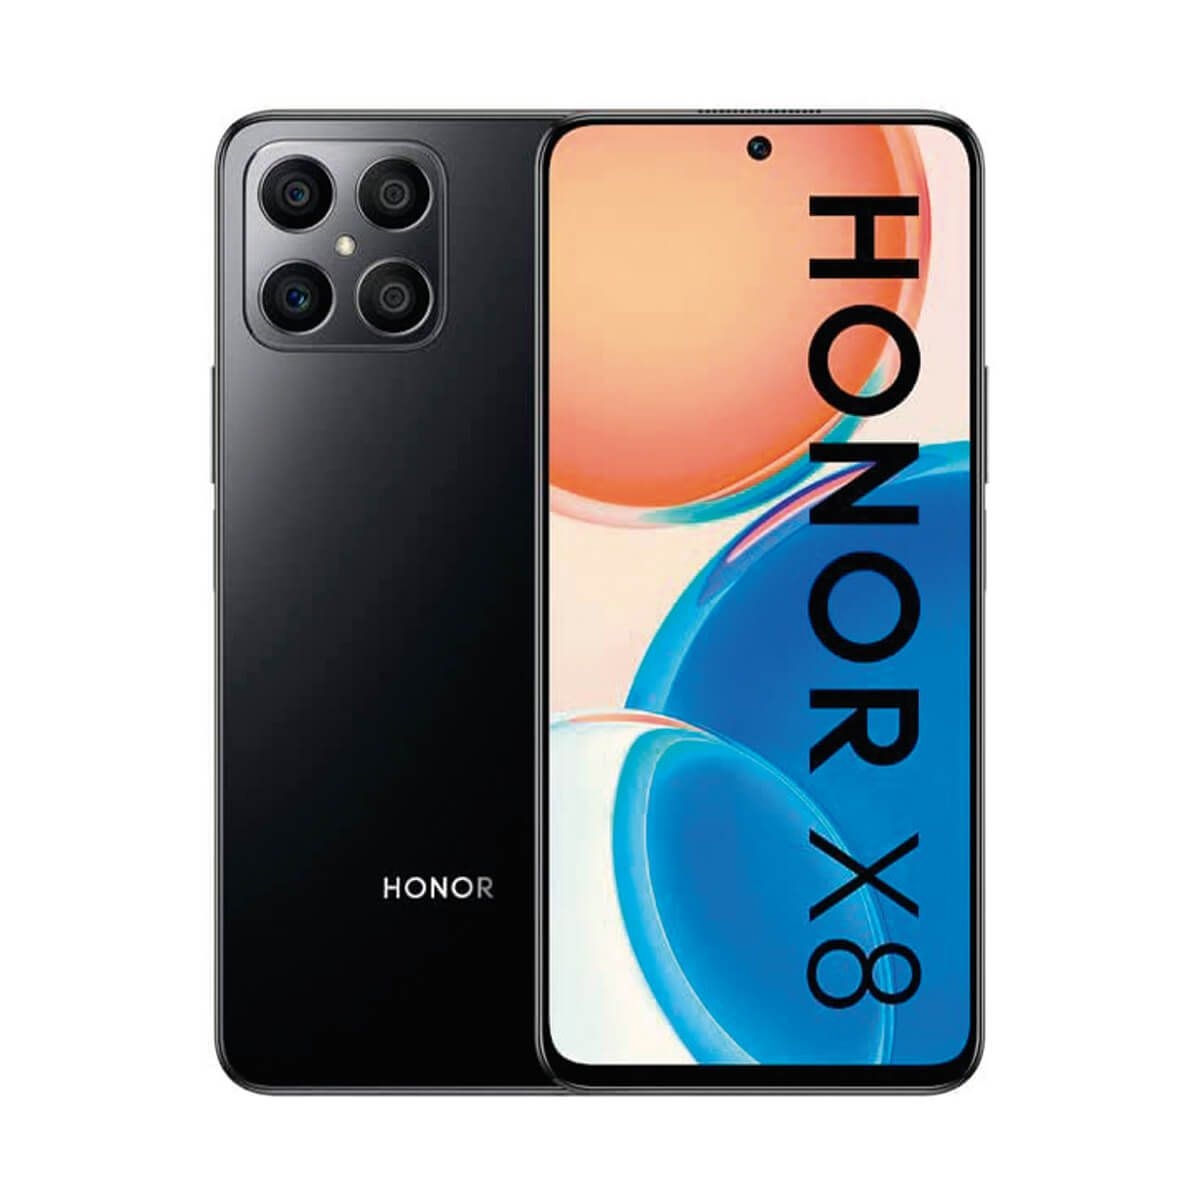  Honor X8a Dual SIM 128GB ROM + 6GB RAM Smartphone 4G  desbloqueado de fábrica (Midnight Black) - Versión internacional :  Celulares y Accesorios